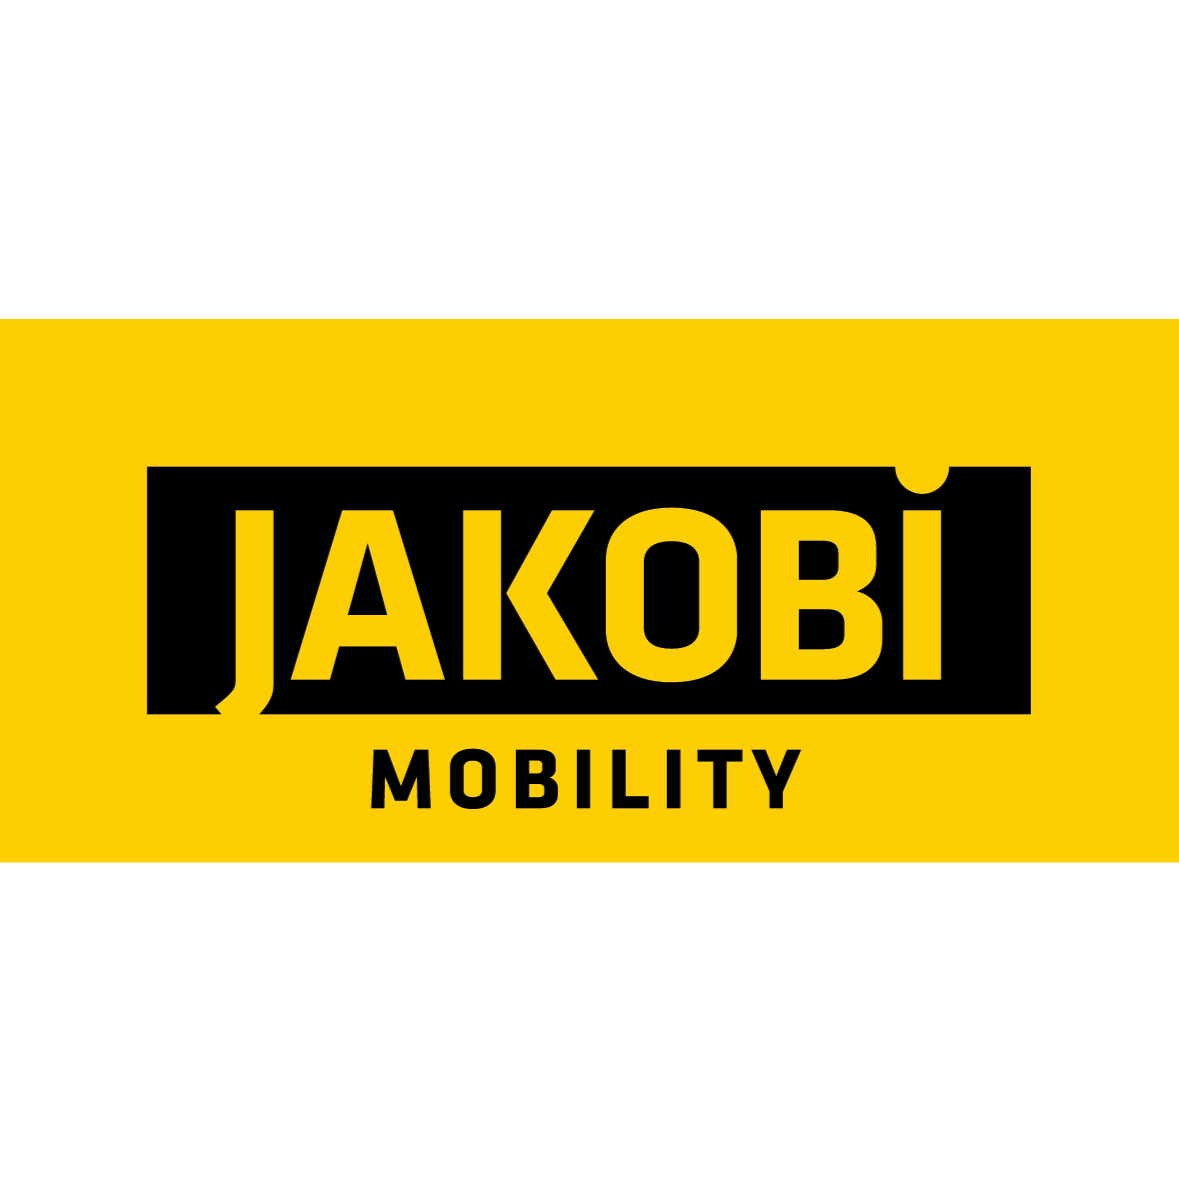 Wir sind Jakobi Mobility: Alles rund ums Auto aus einer Hand. Unsere Services beinhalten: Abschleppdienst, Autovermietung, Pannenhilfe, KFZ-Meisterwerkstatt im Raum Freiburg und Titisee-Neustadt.